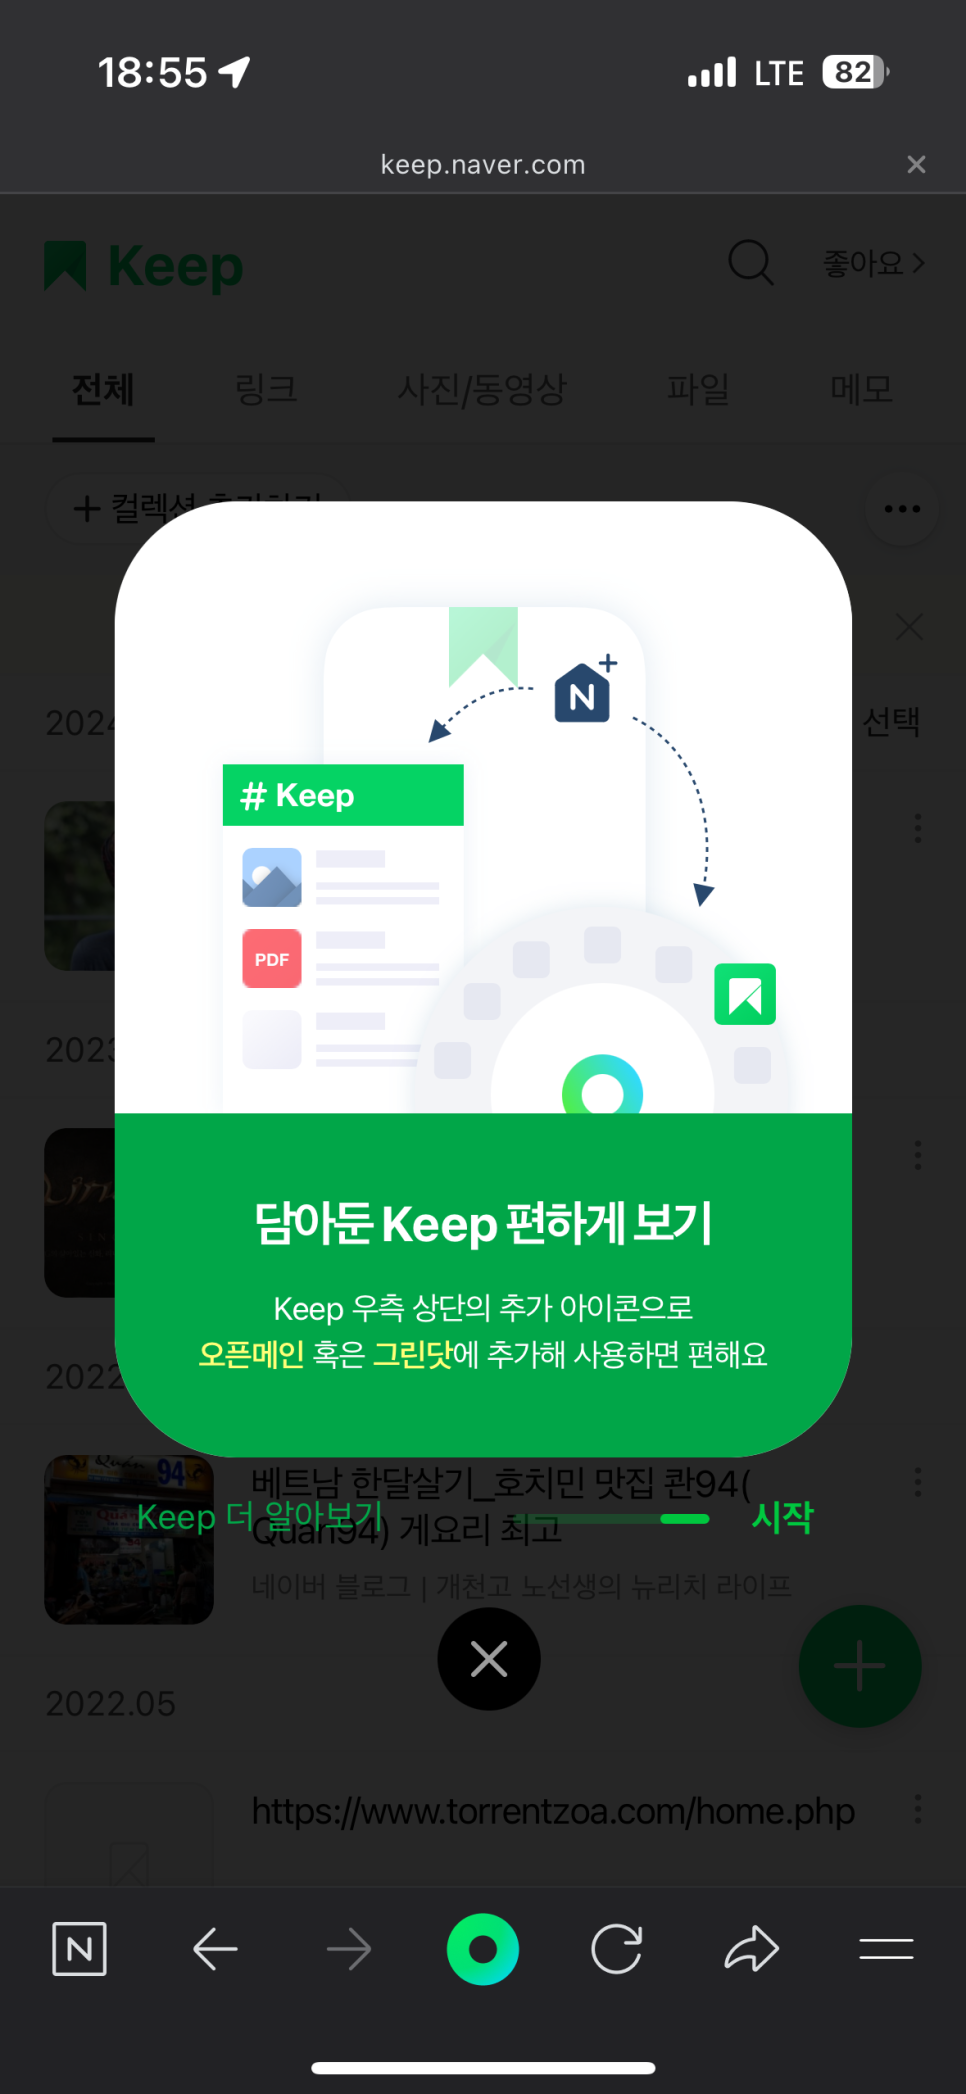 네이버킵 네이버keep 활용법 북마크 즐겨찾기 링크 파일 컬렉션